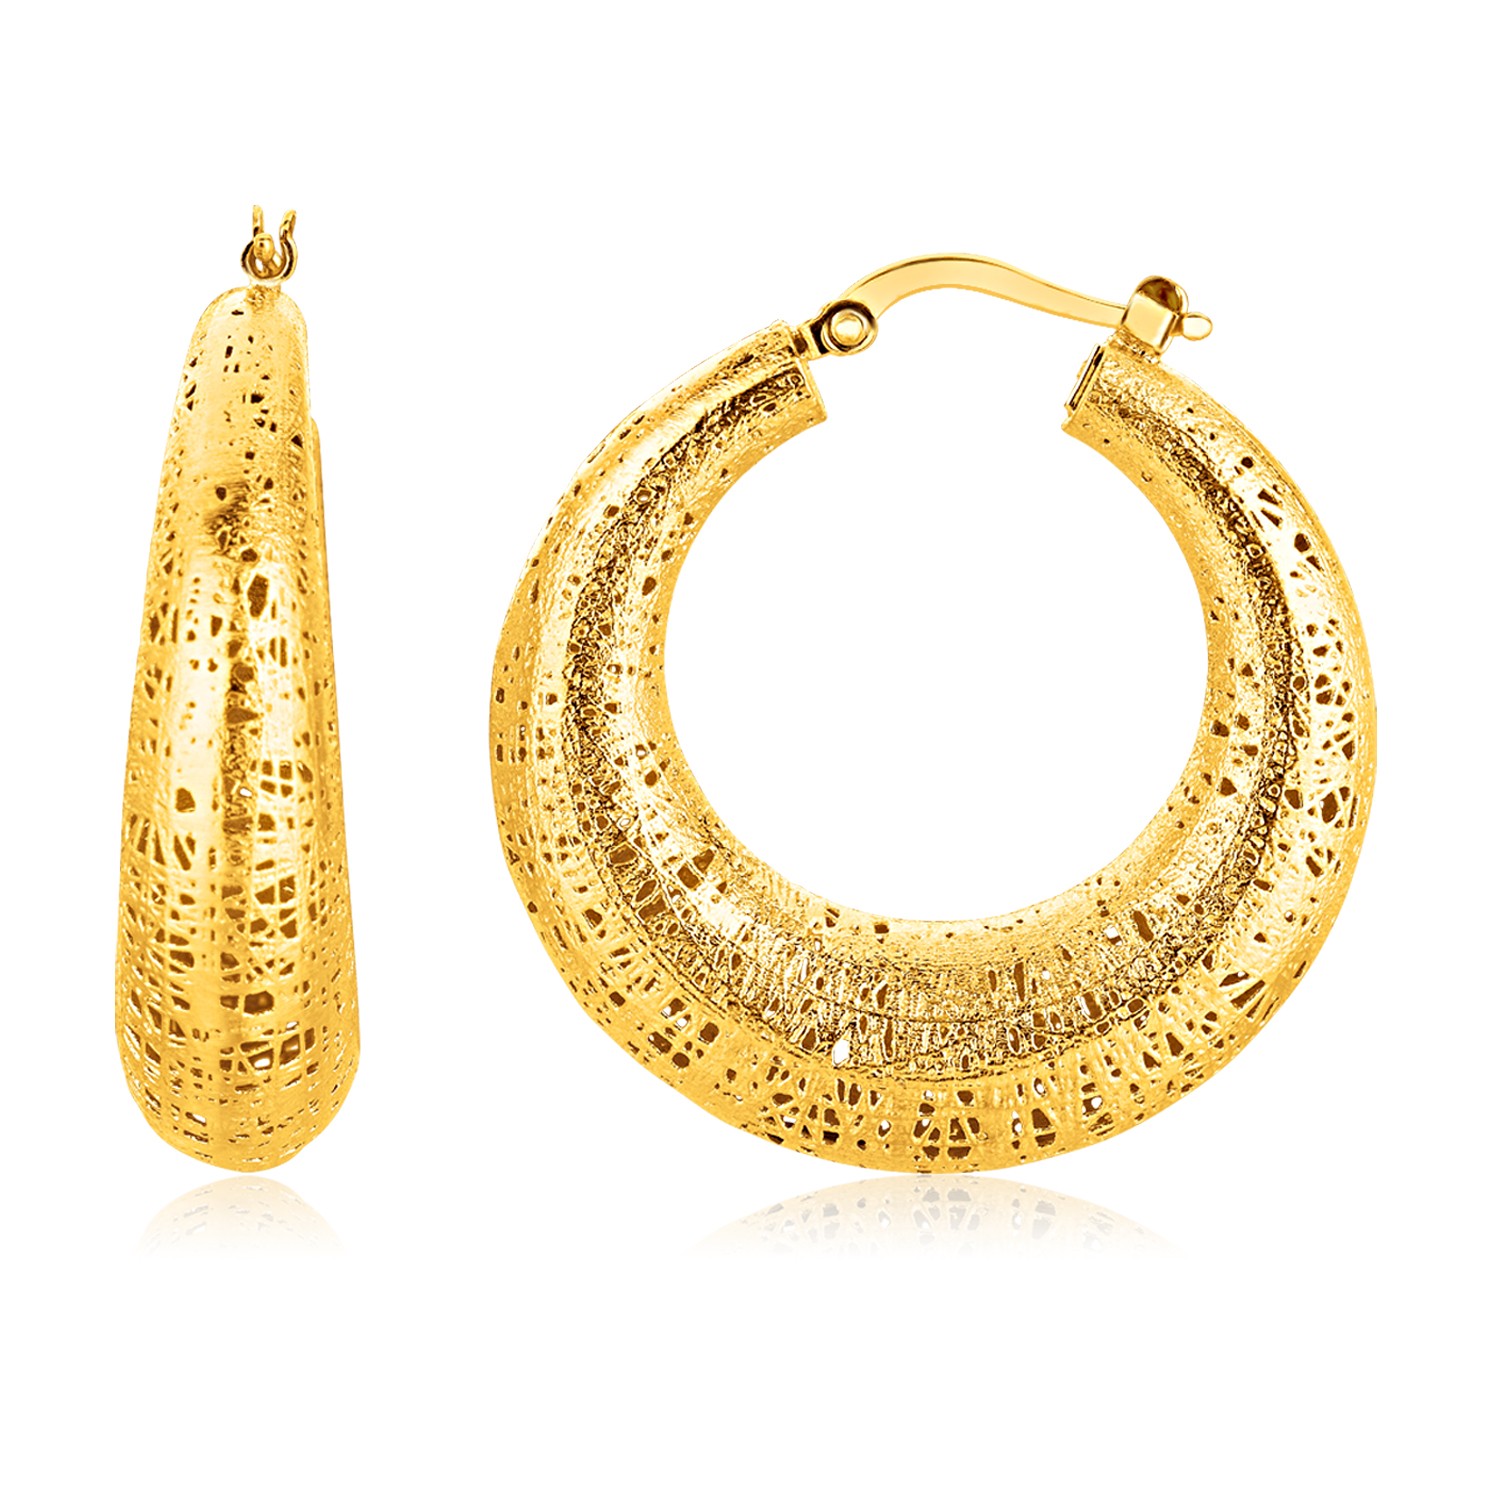 Freeform Weave Hoop Earring in 14K Yellow Gold - Richard Cannon Jewelry